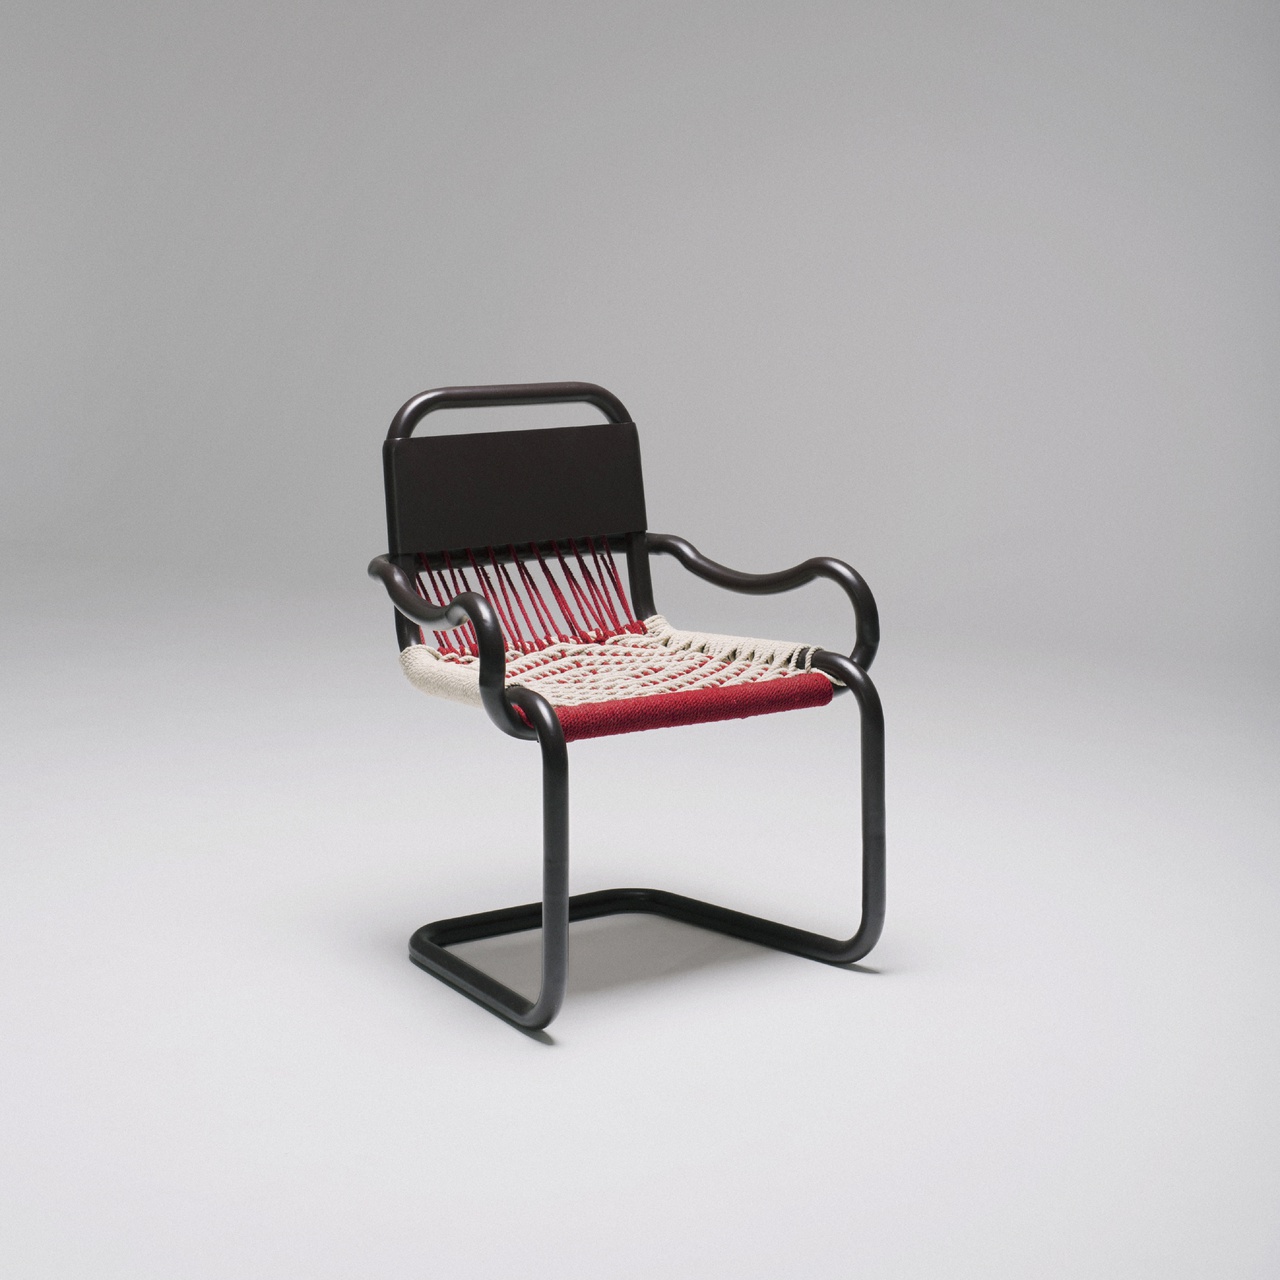 5/6 - Designstoel uit India, gemaakt voor het cross cultural chairs project.